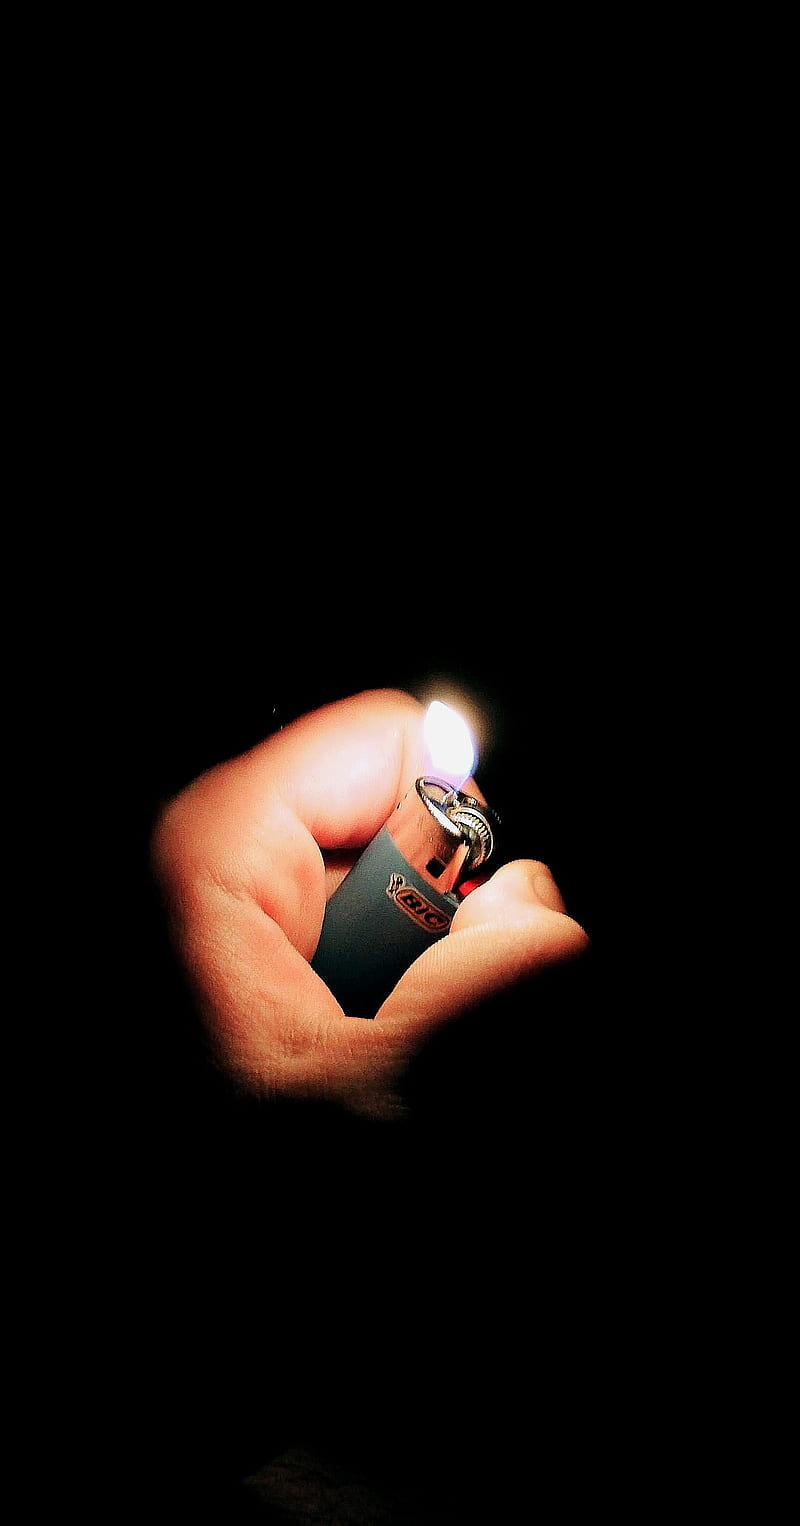 Firelighter, lighter, smoke, flame, HD phone wallpaper